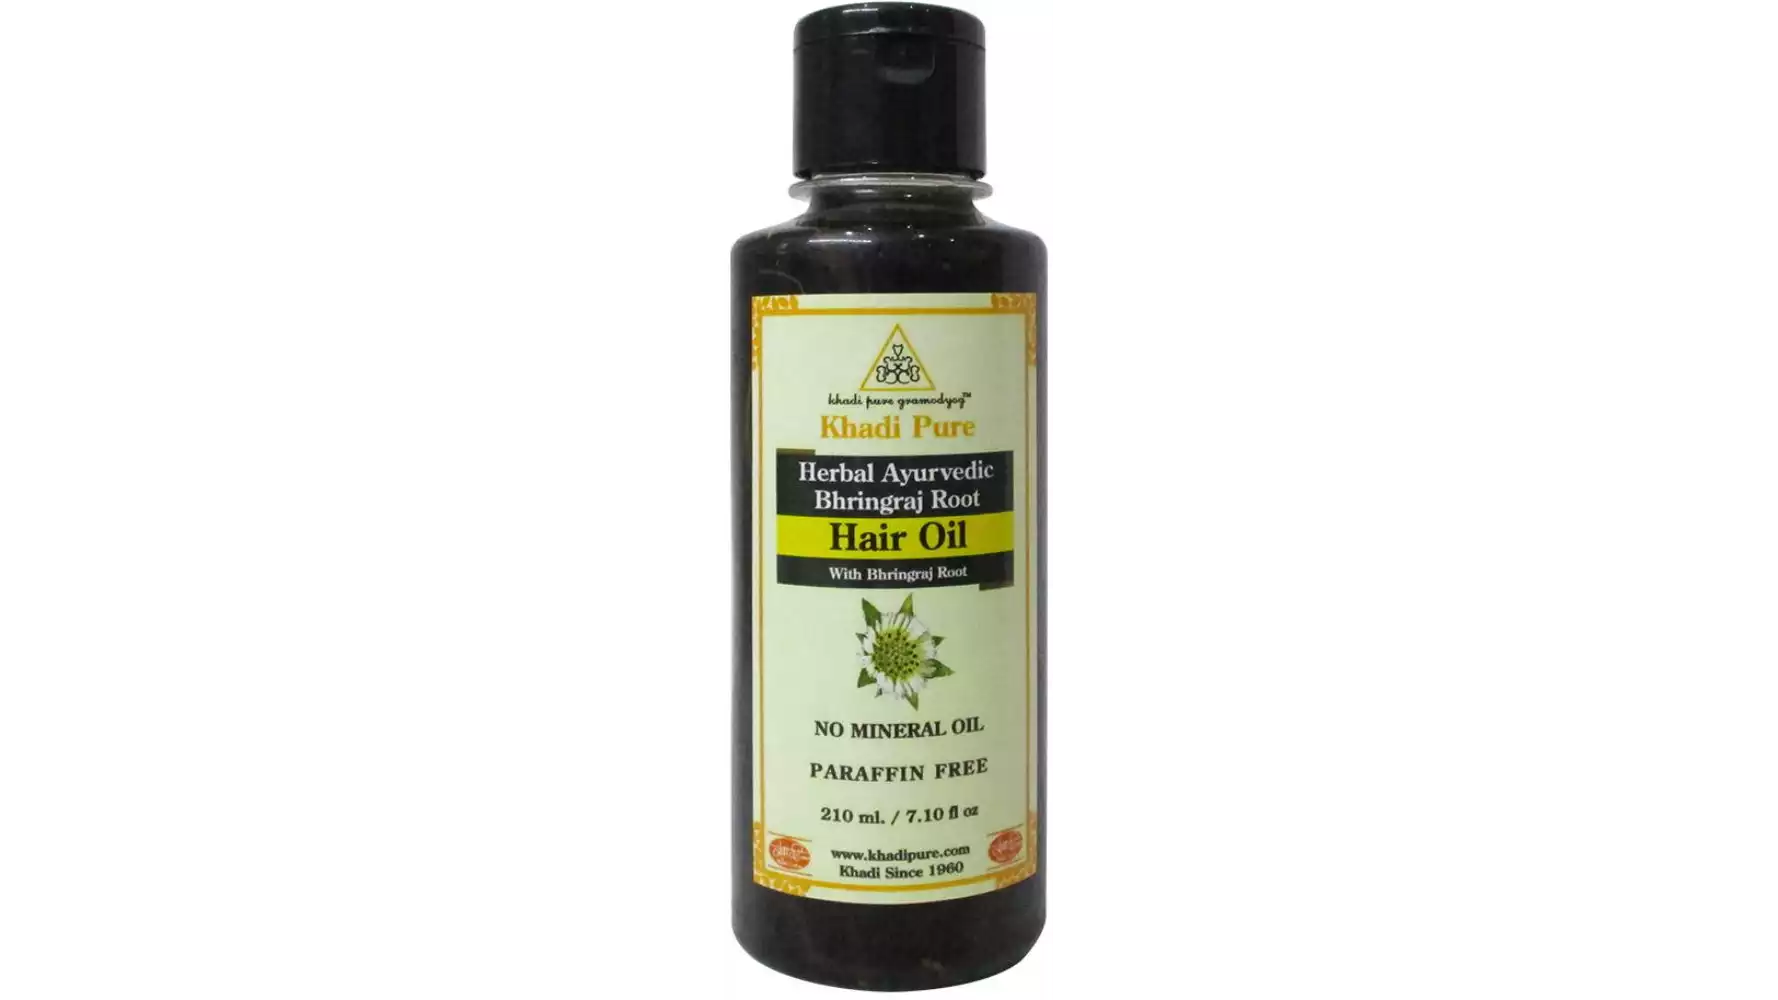 Khadi Pure Ayurvedic Bhringraj Root Hair Oil (210ml)